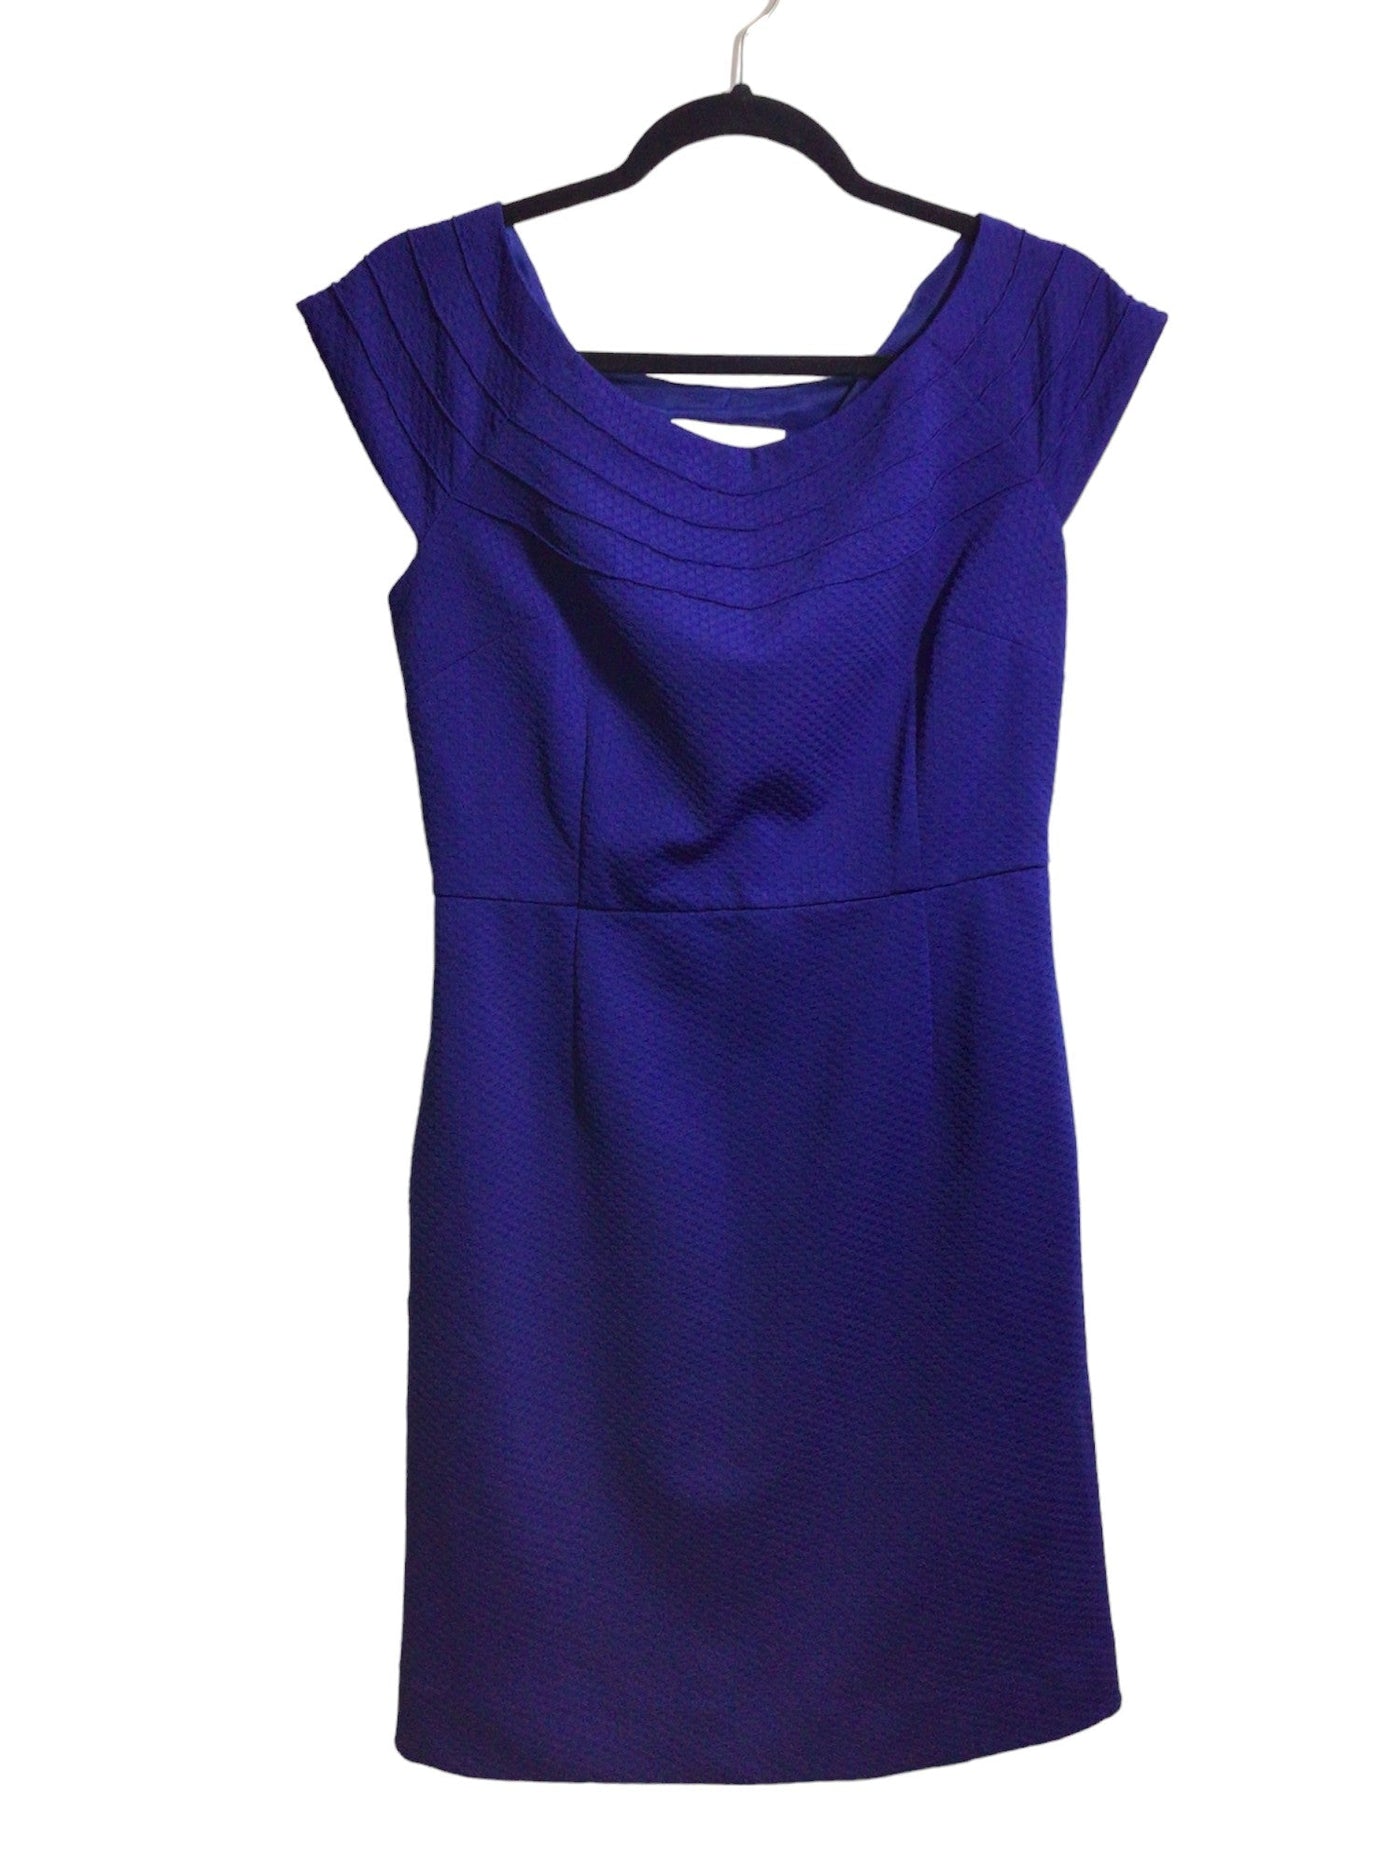 UNBRANDED Women Sheath Dresses Regular fit in Blue - Size M | 12 $ KOOP